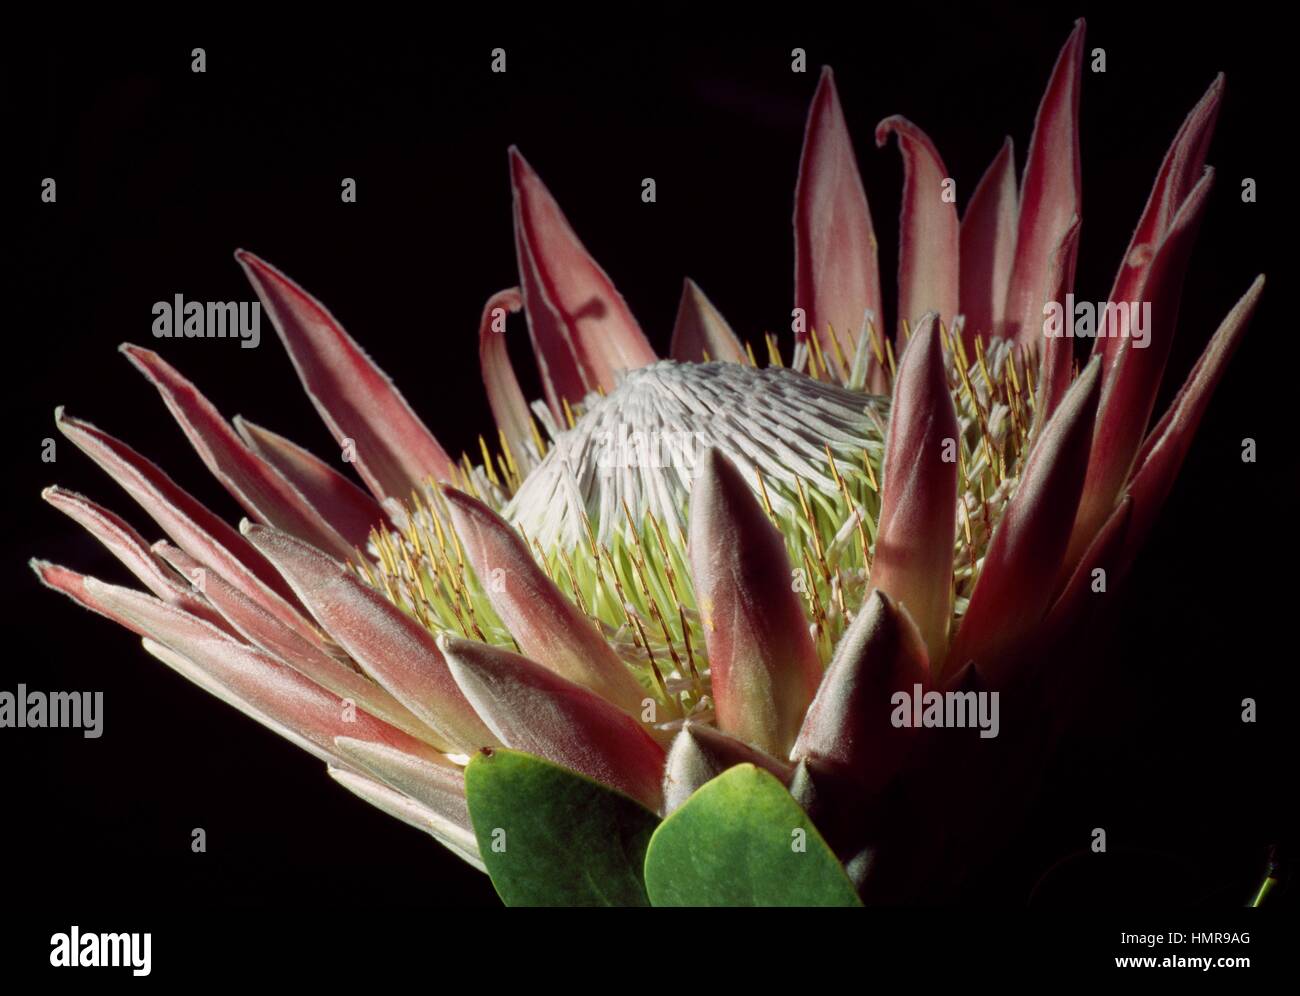 Sugarbushes (Protea repens), Proteaceae. Stock Photo